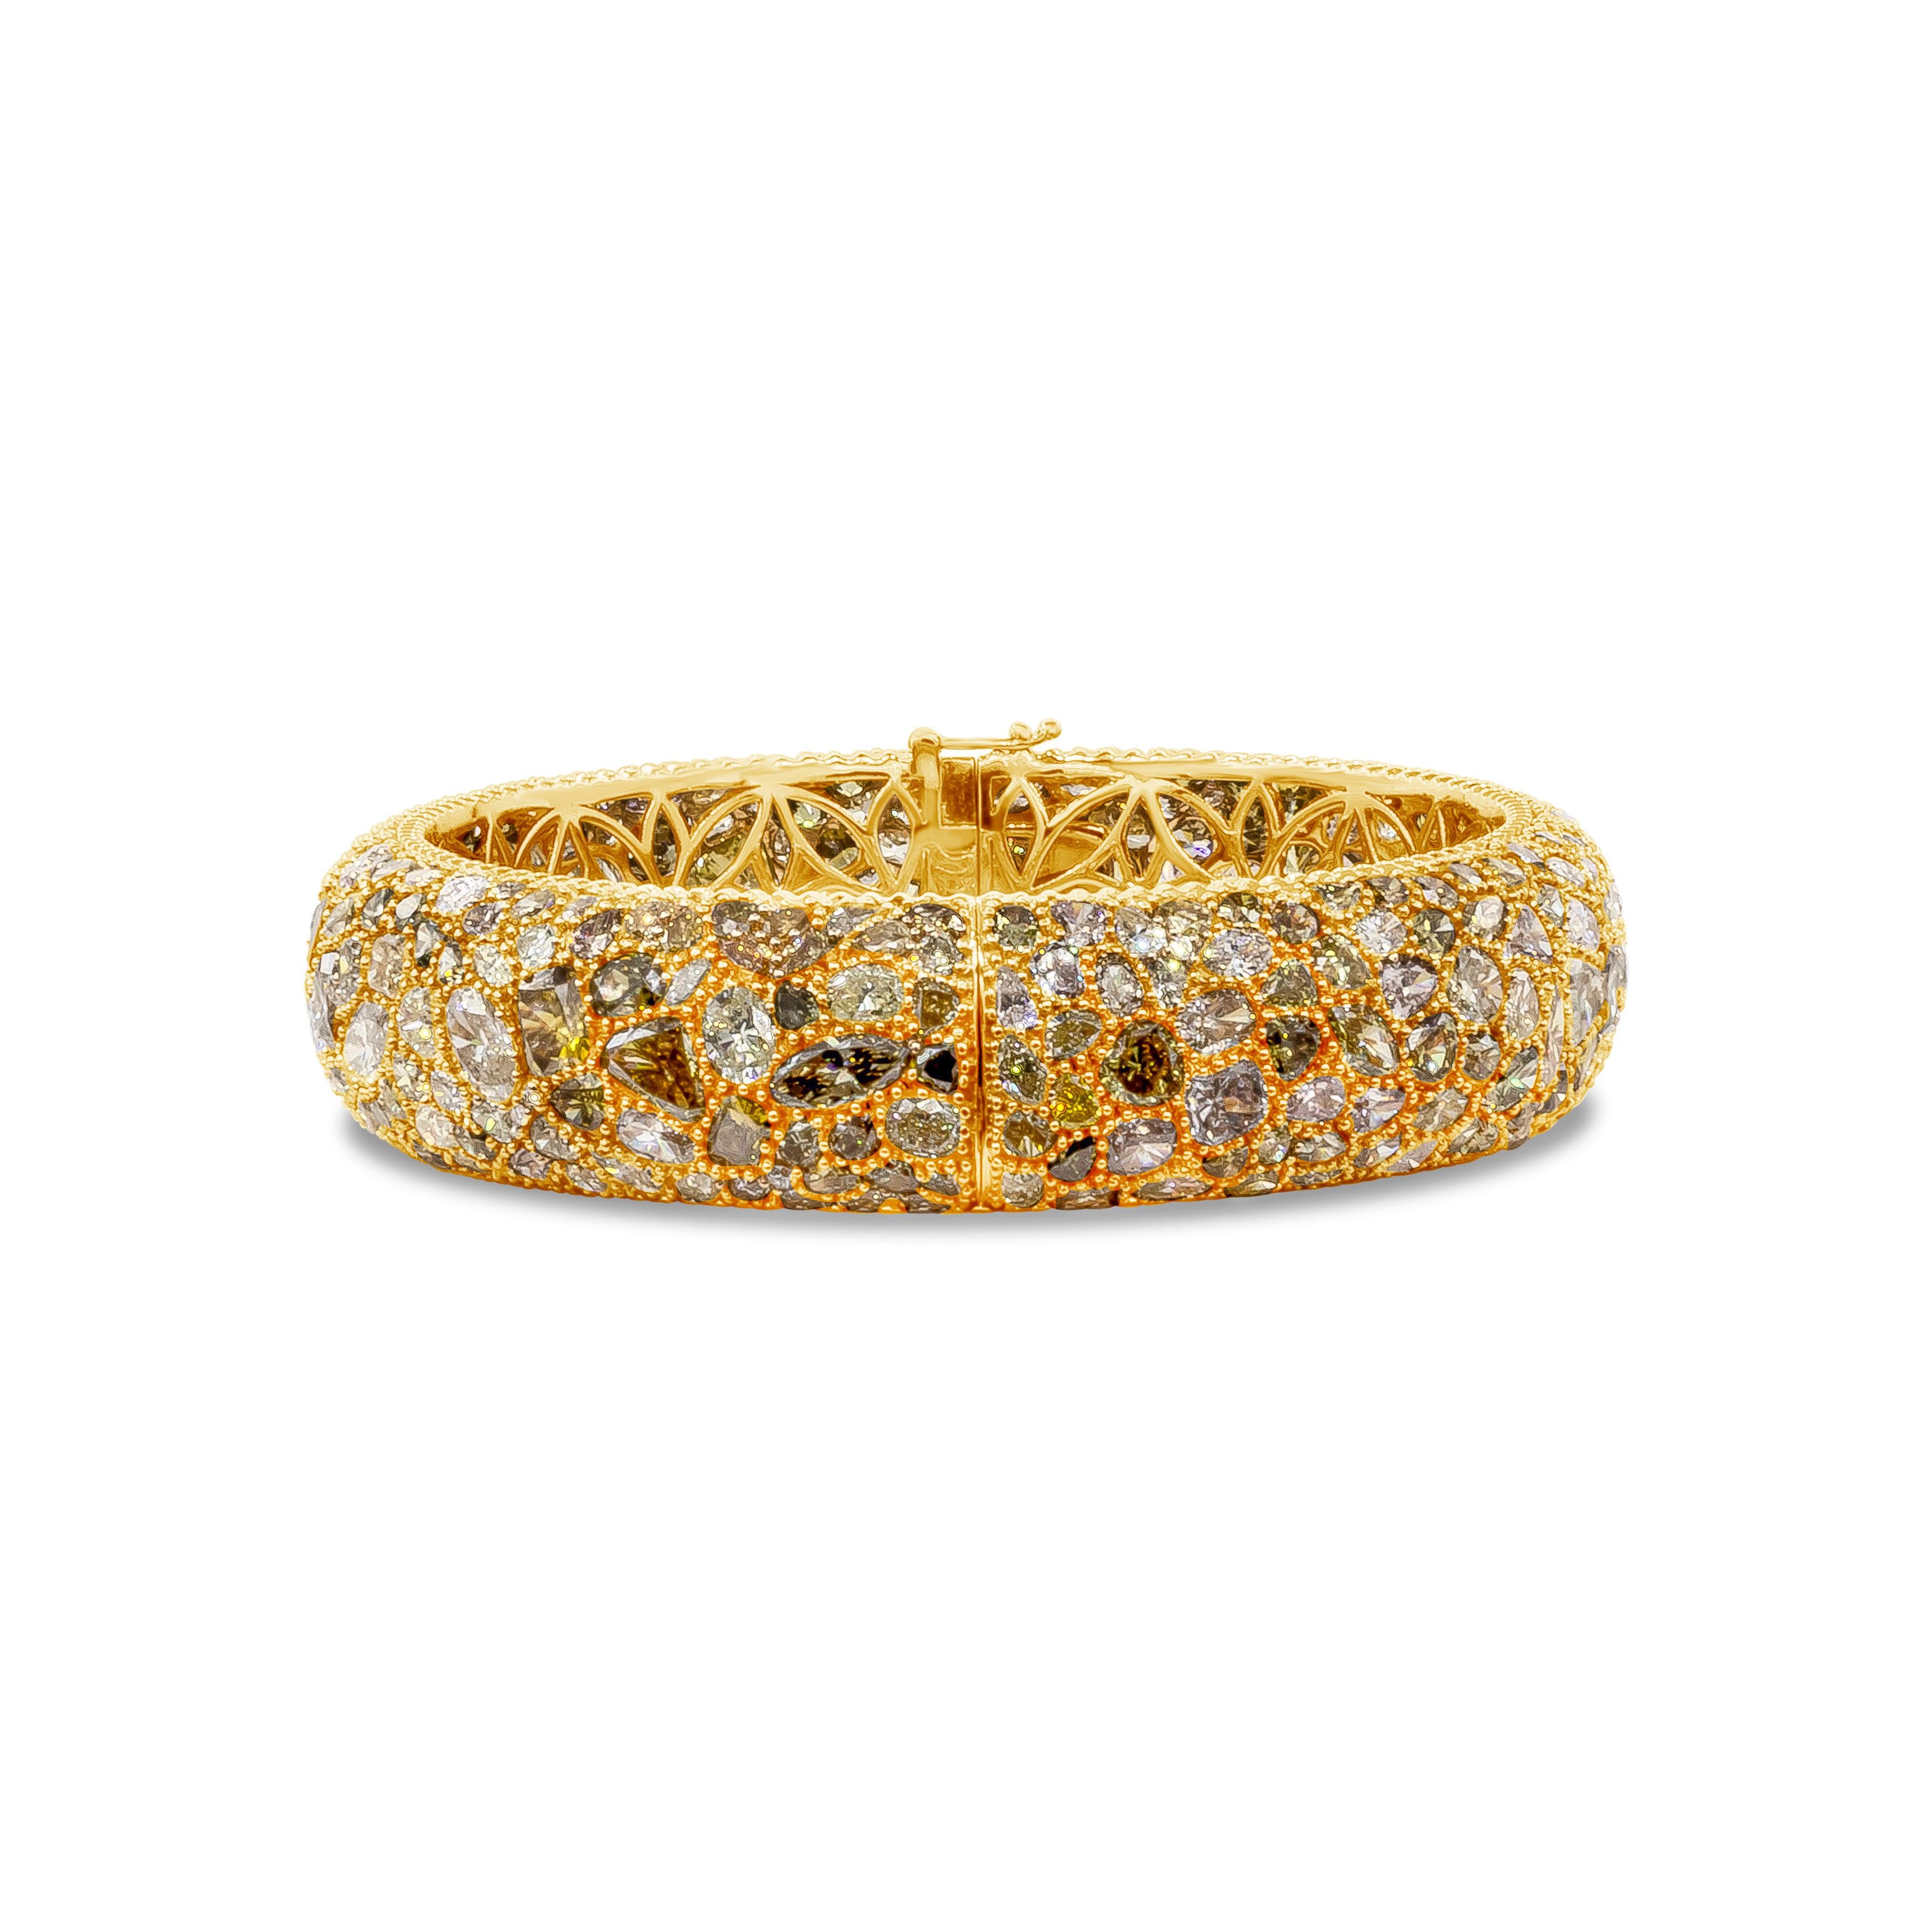 Elegant bracelet en forme de dôme, riche en couleurs, mettant en valeur 362 diamants de taille mixte et de couleur fantaisie, micro-pavés sur une monture en or rose 18 carats, pesant au total 49,12 carats. Chaque diamant est taillé de manière unique